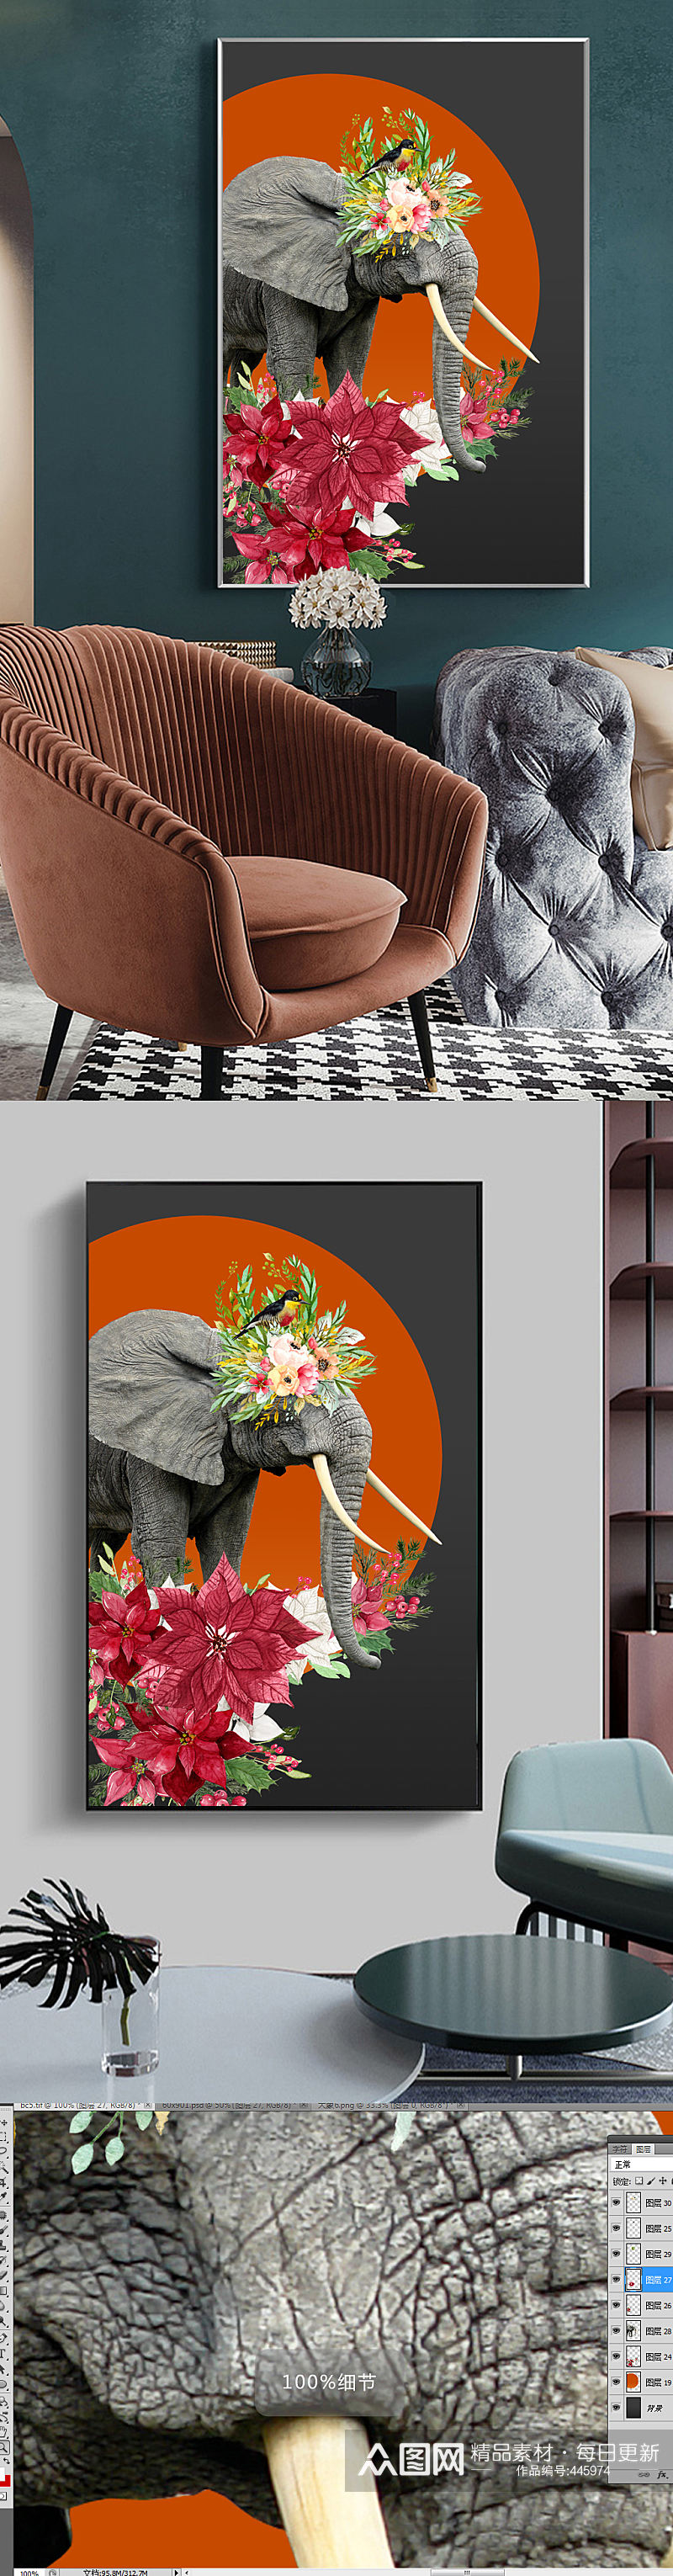 后现代抽象动物大象装饰画素材